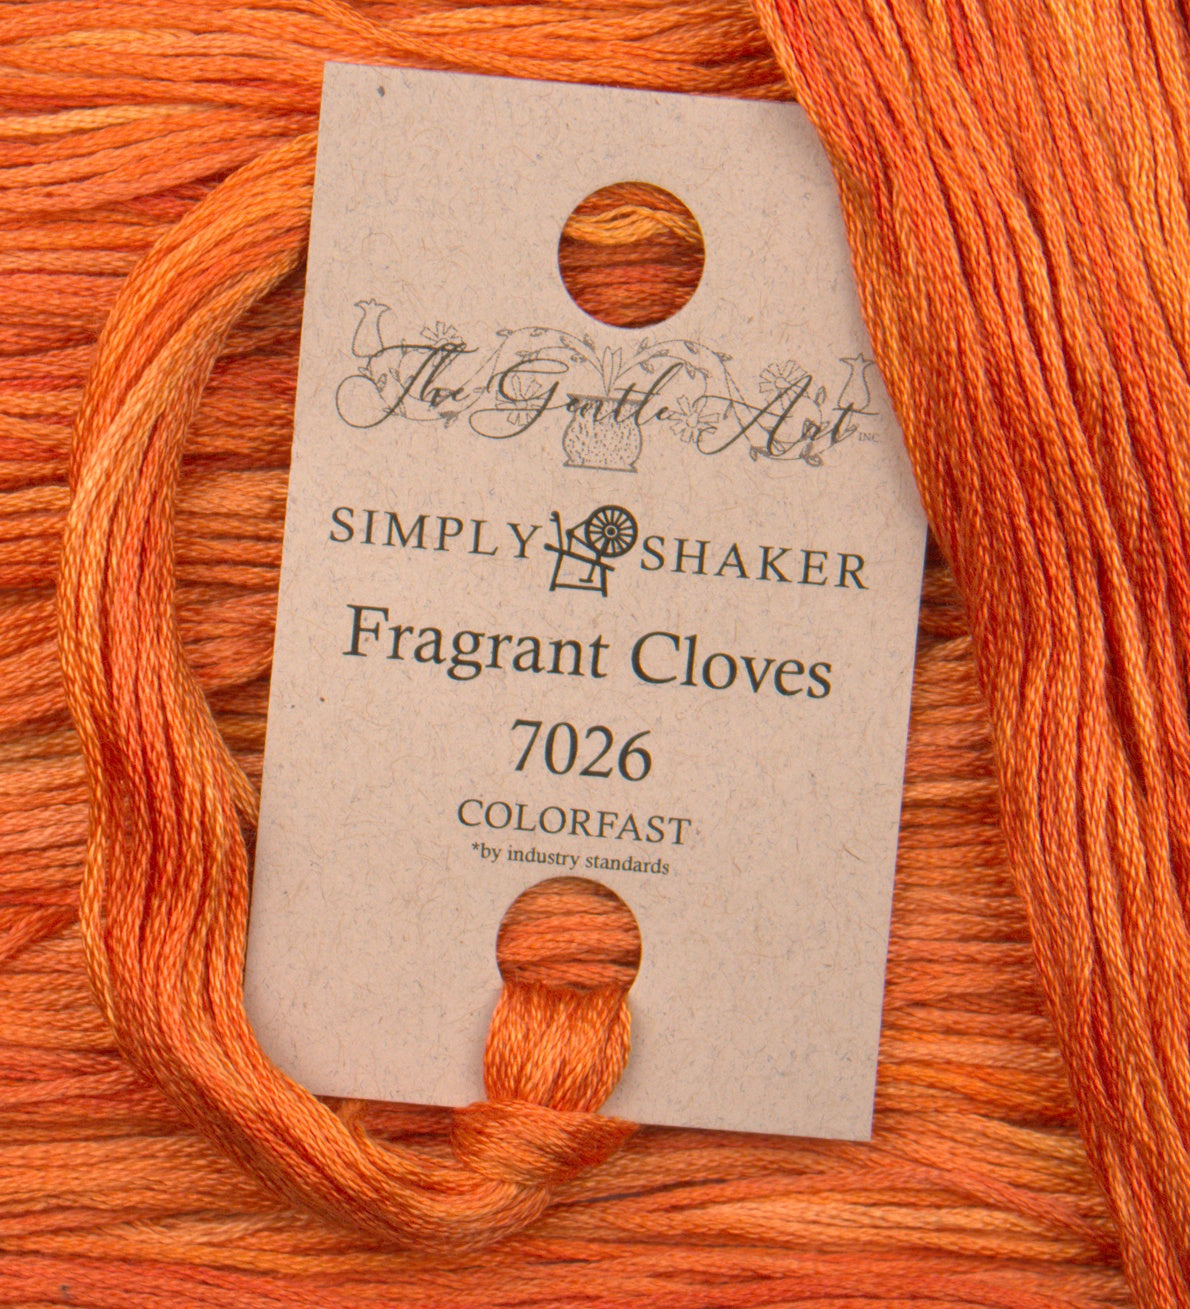 Fragrant Cloves 7026